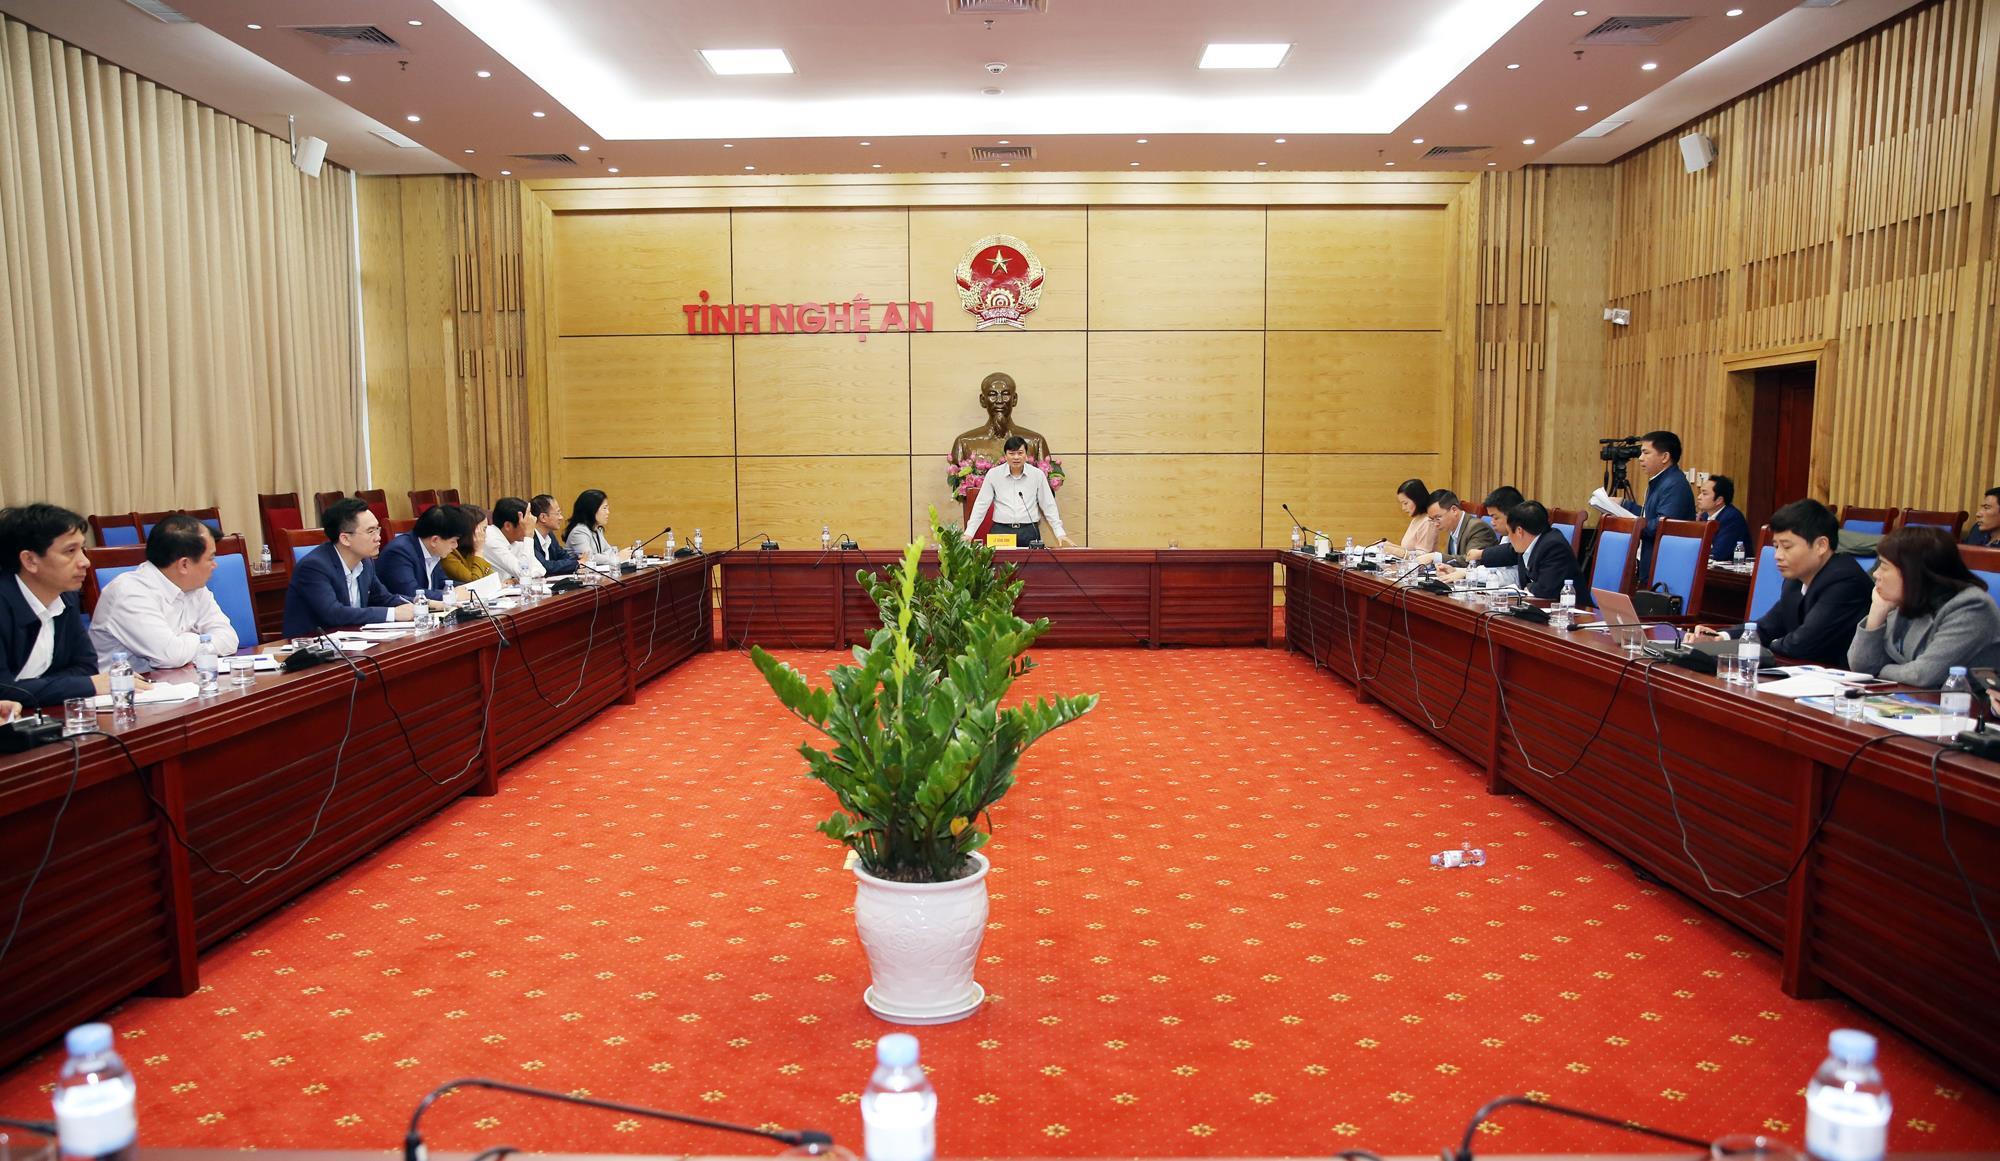 Tham dự có lãnh đạo các sở, ban, ngành cấp tỉnh; đồng chí Nguyễn Thị Kim Chi - Ủy viên BCH Đảng bộ tỉnh, Bí thư Thị ủy Cửa Lò. 